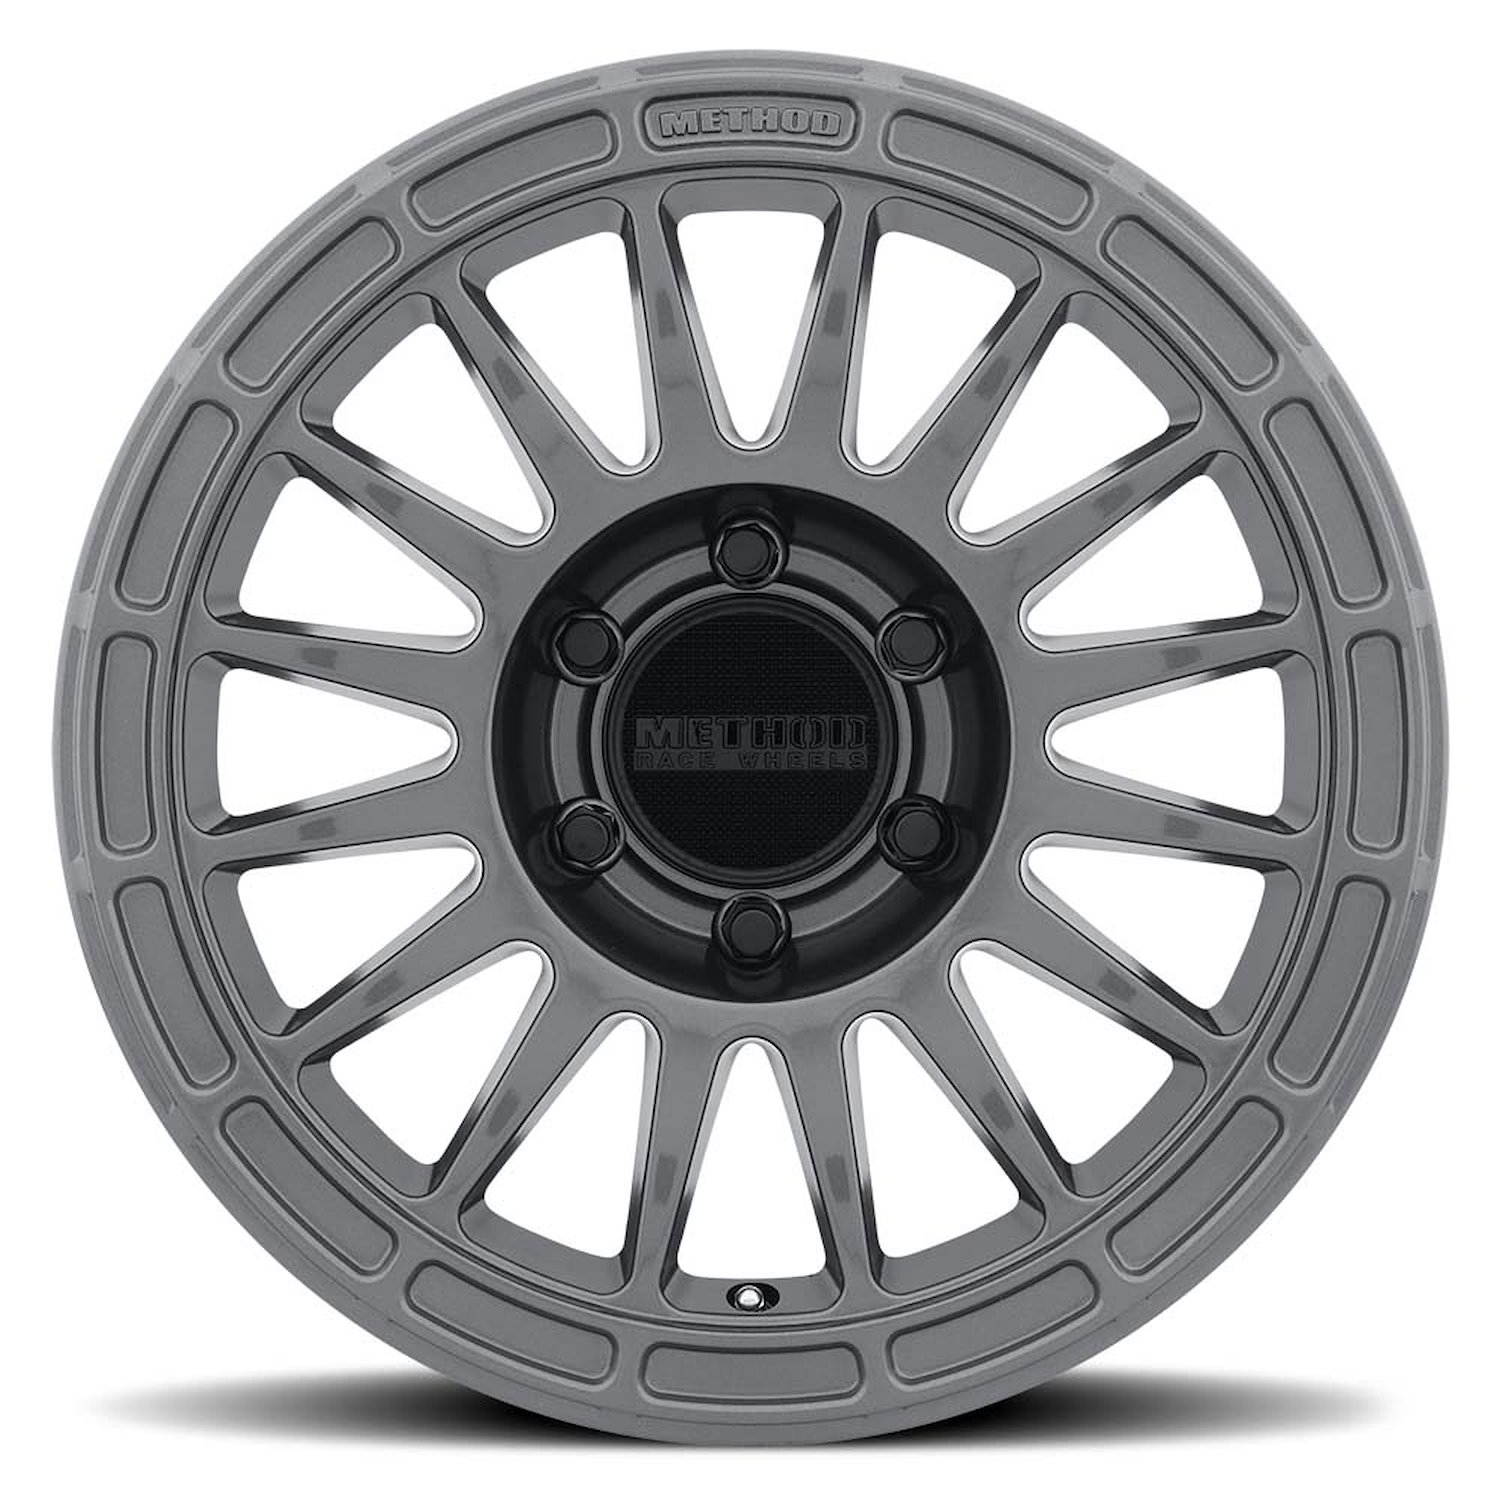 MR31477560825 STREET MR314 Wheel [Size: 17" x 7.5"] Gloss Titanium